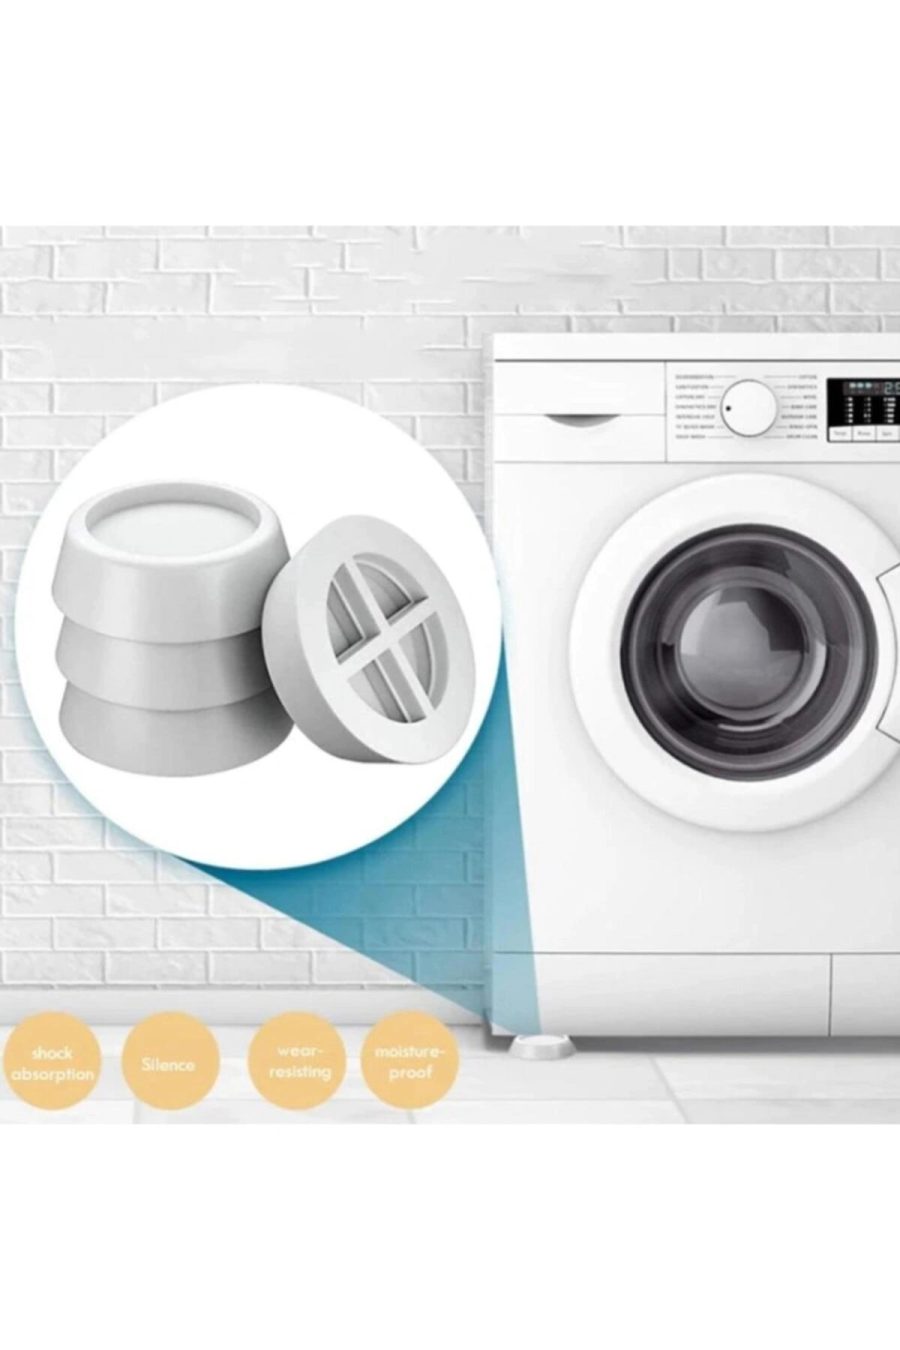 Çamaşır Makinesi Titreşim Önleyici Ayak Cosmiq 4 Adet (SİEMENS - BOSCH - ARÇELİK - VESTEL) | CCMTÖA